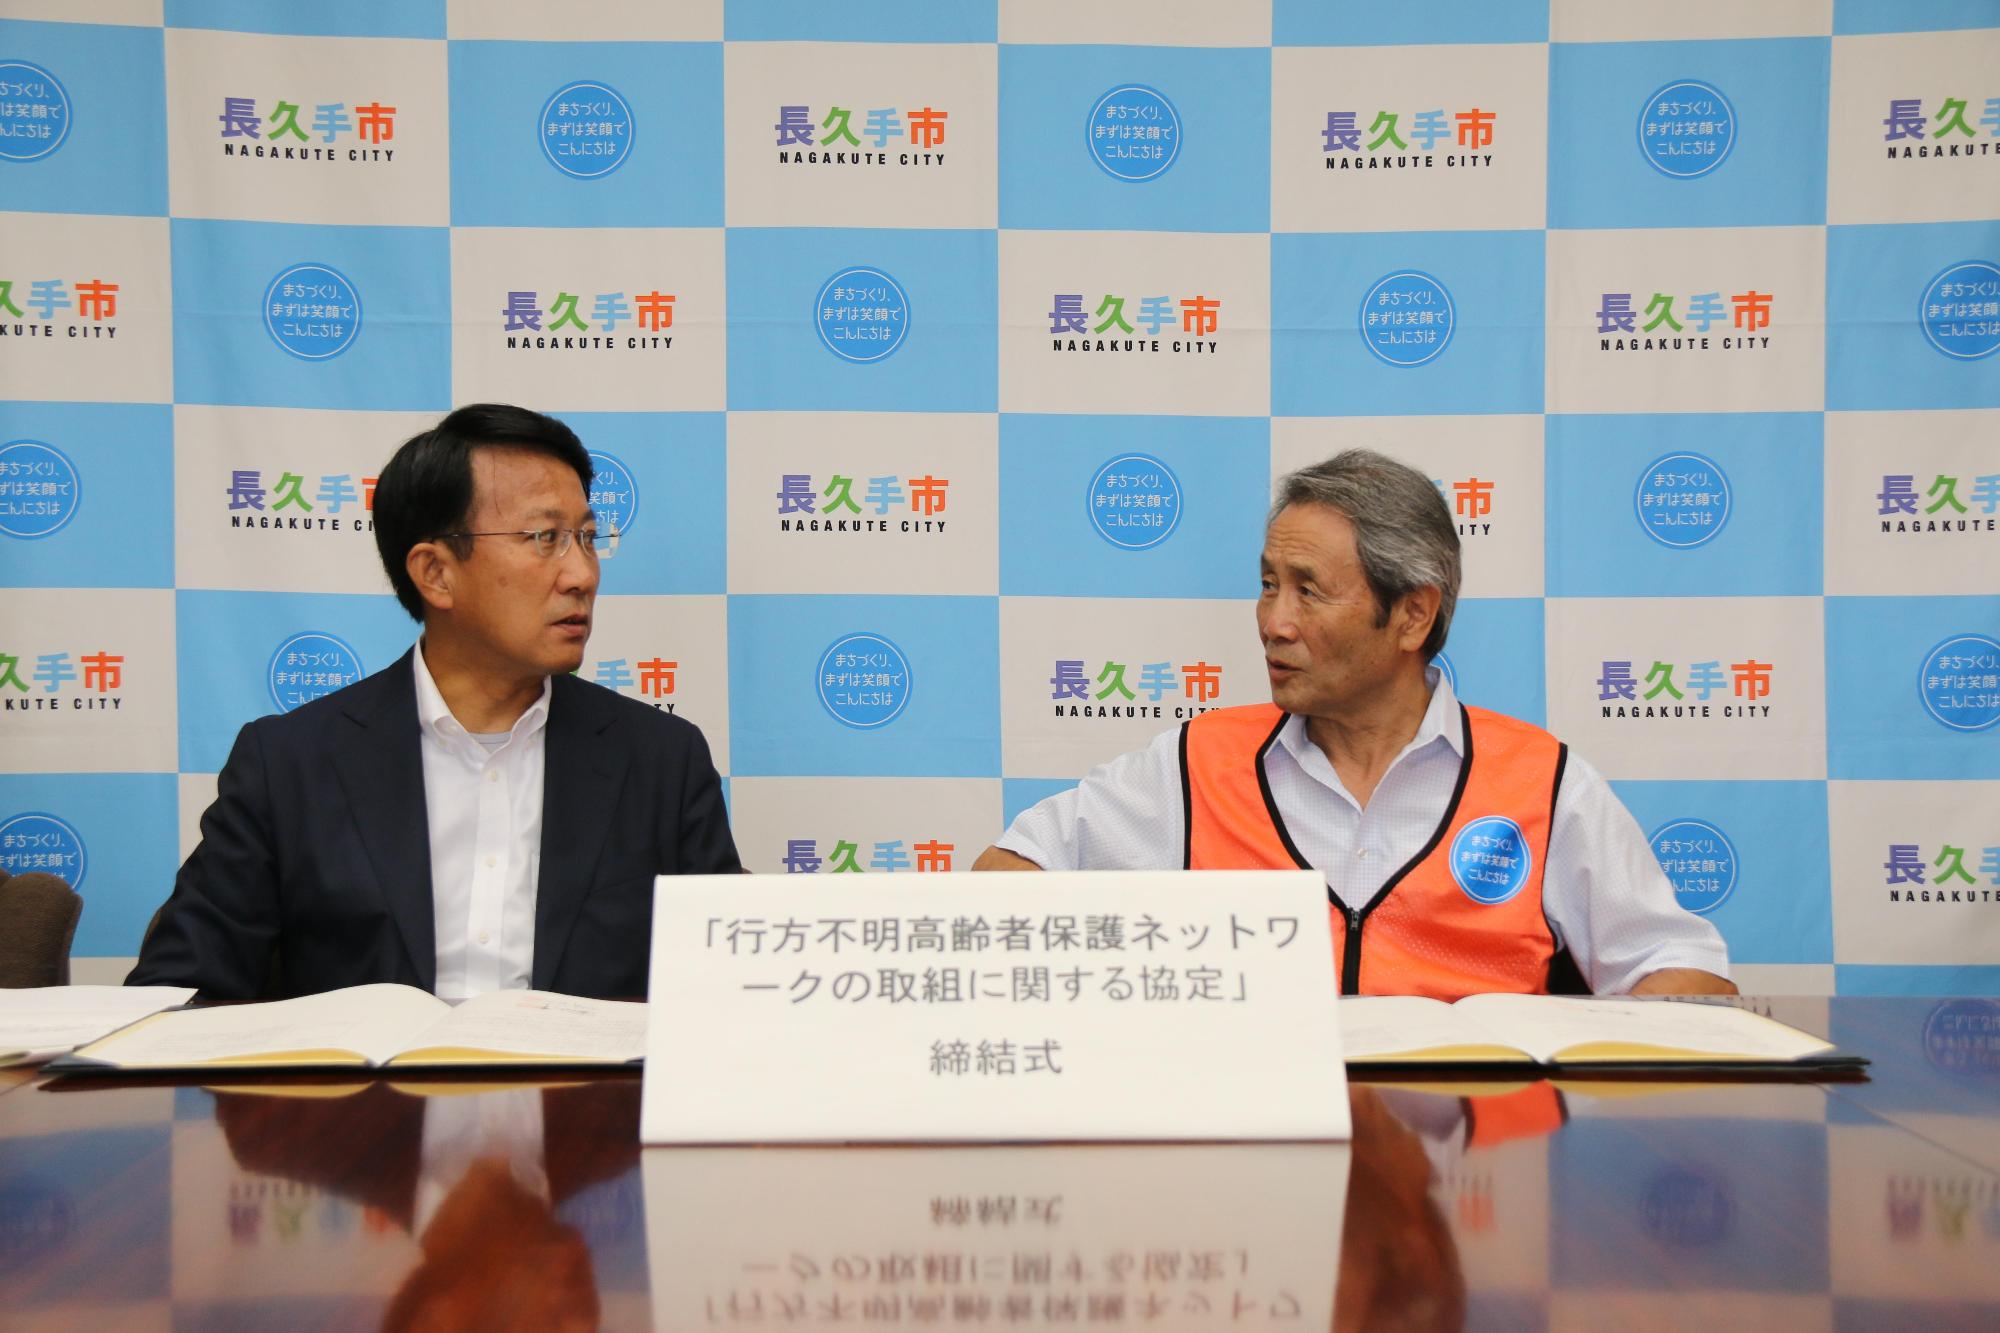 調印式にてひまわりネットワークの小野社長と市長が並んで座っておりお互いの顔を見て話をしている写真